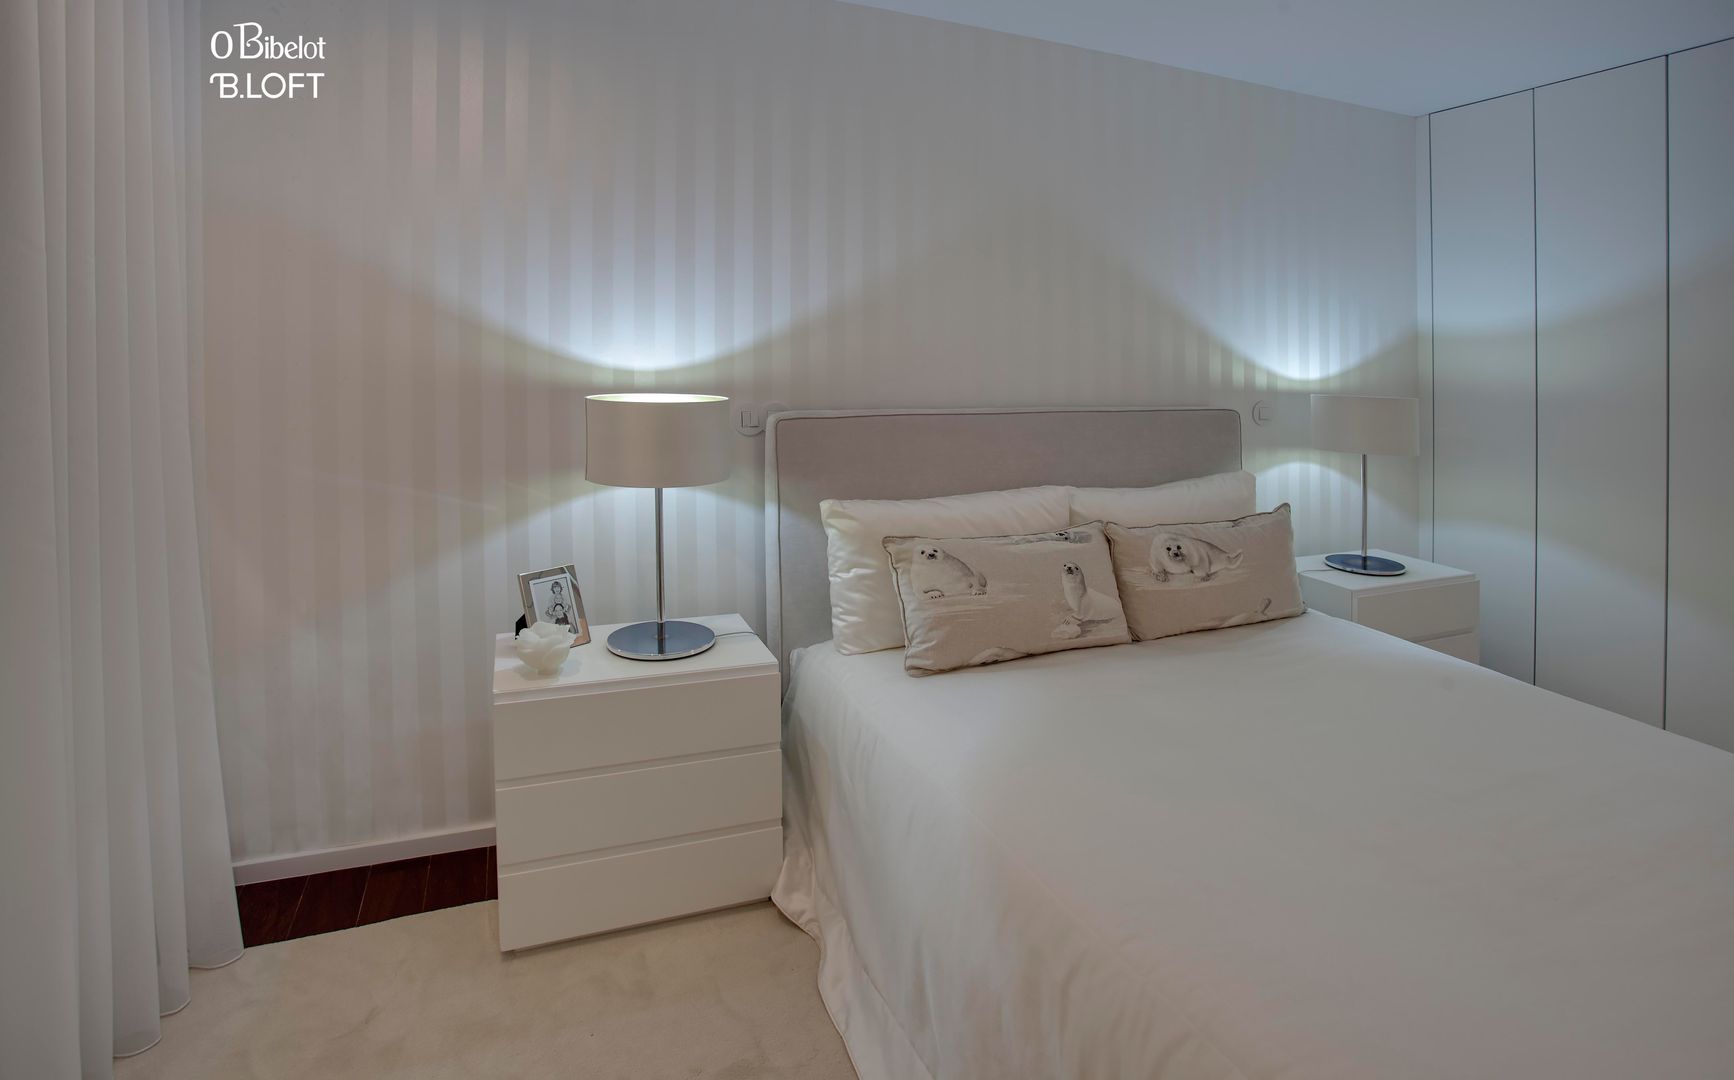 2015, Decoração de Apartamento BI, B.loft B.loft Minimalist bedroom